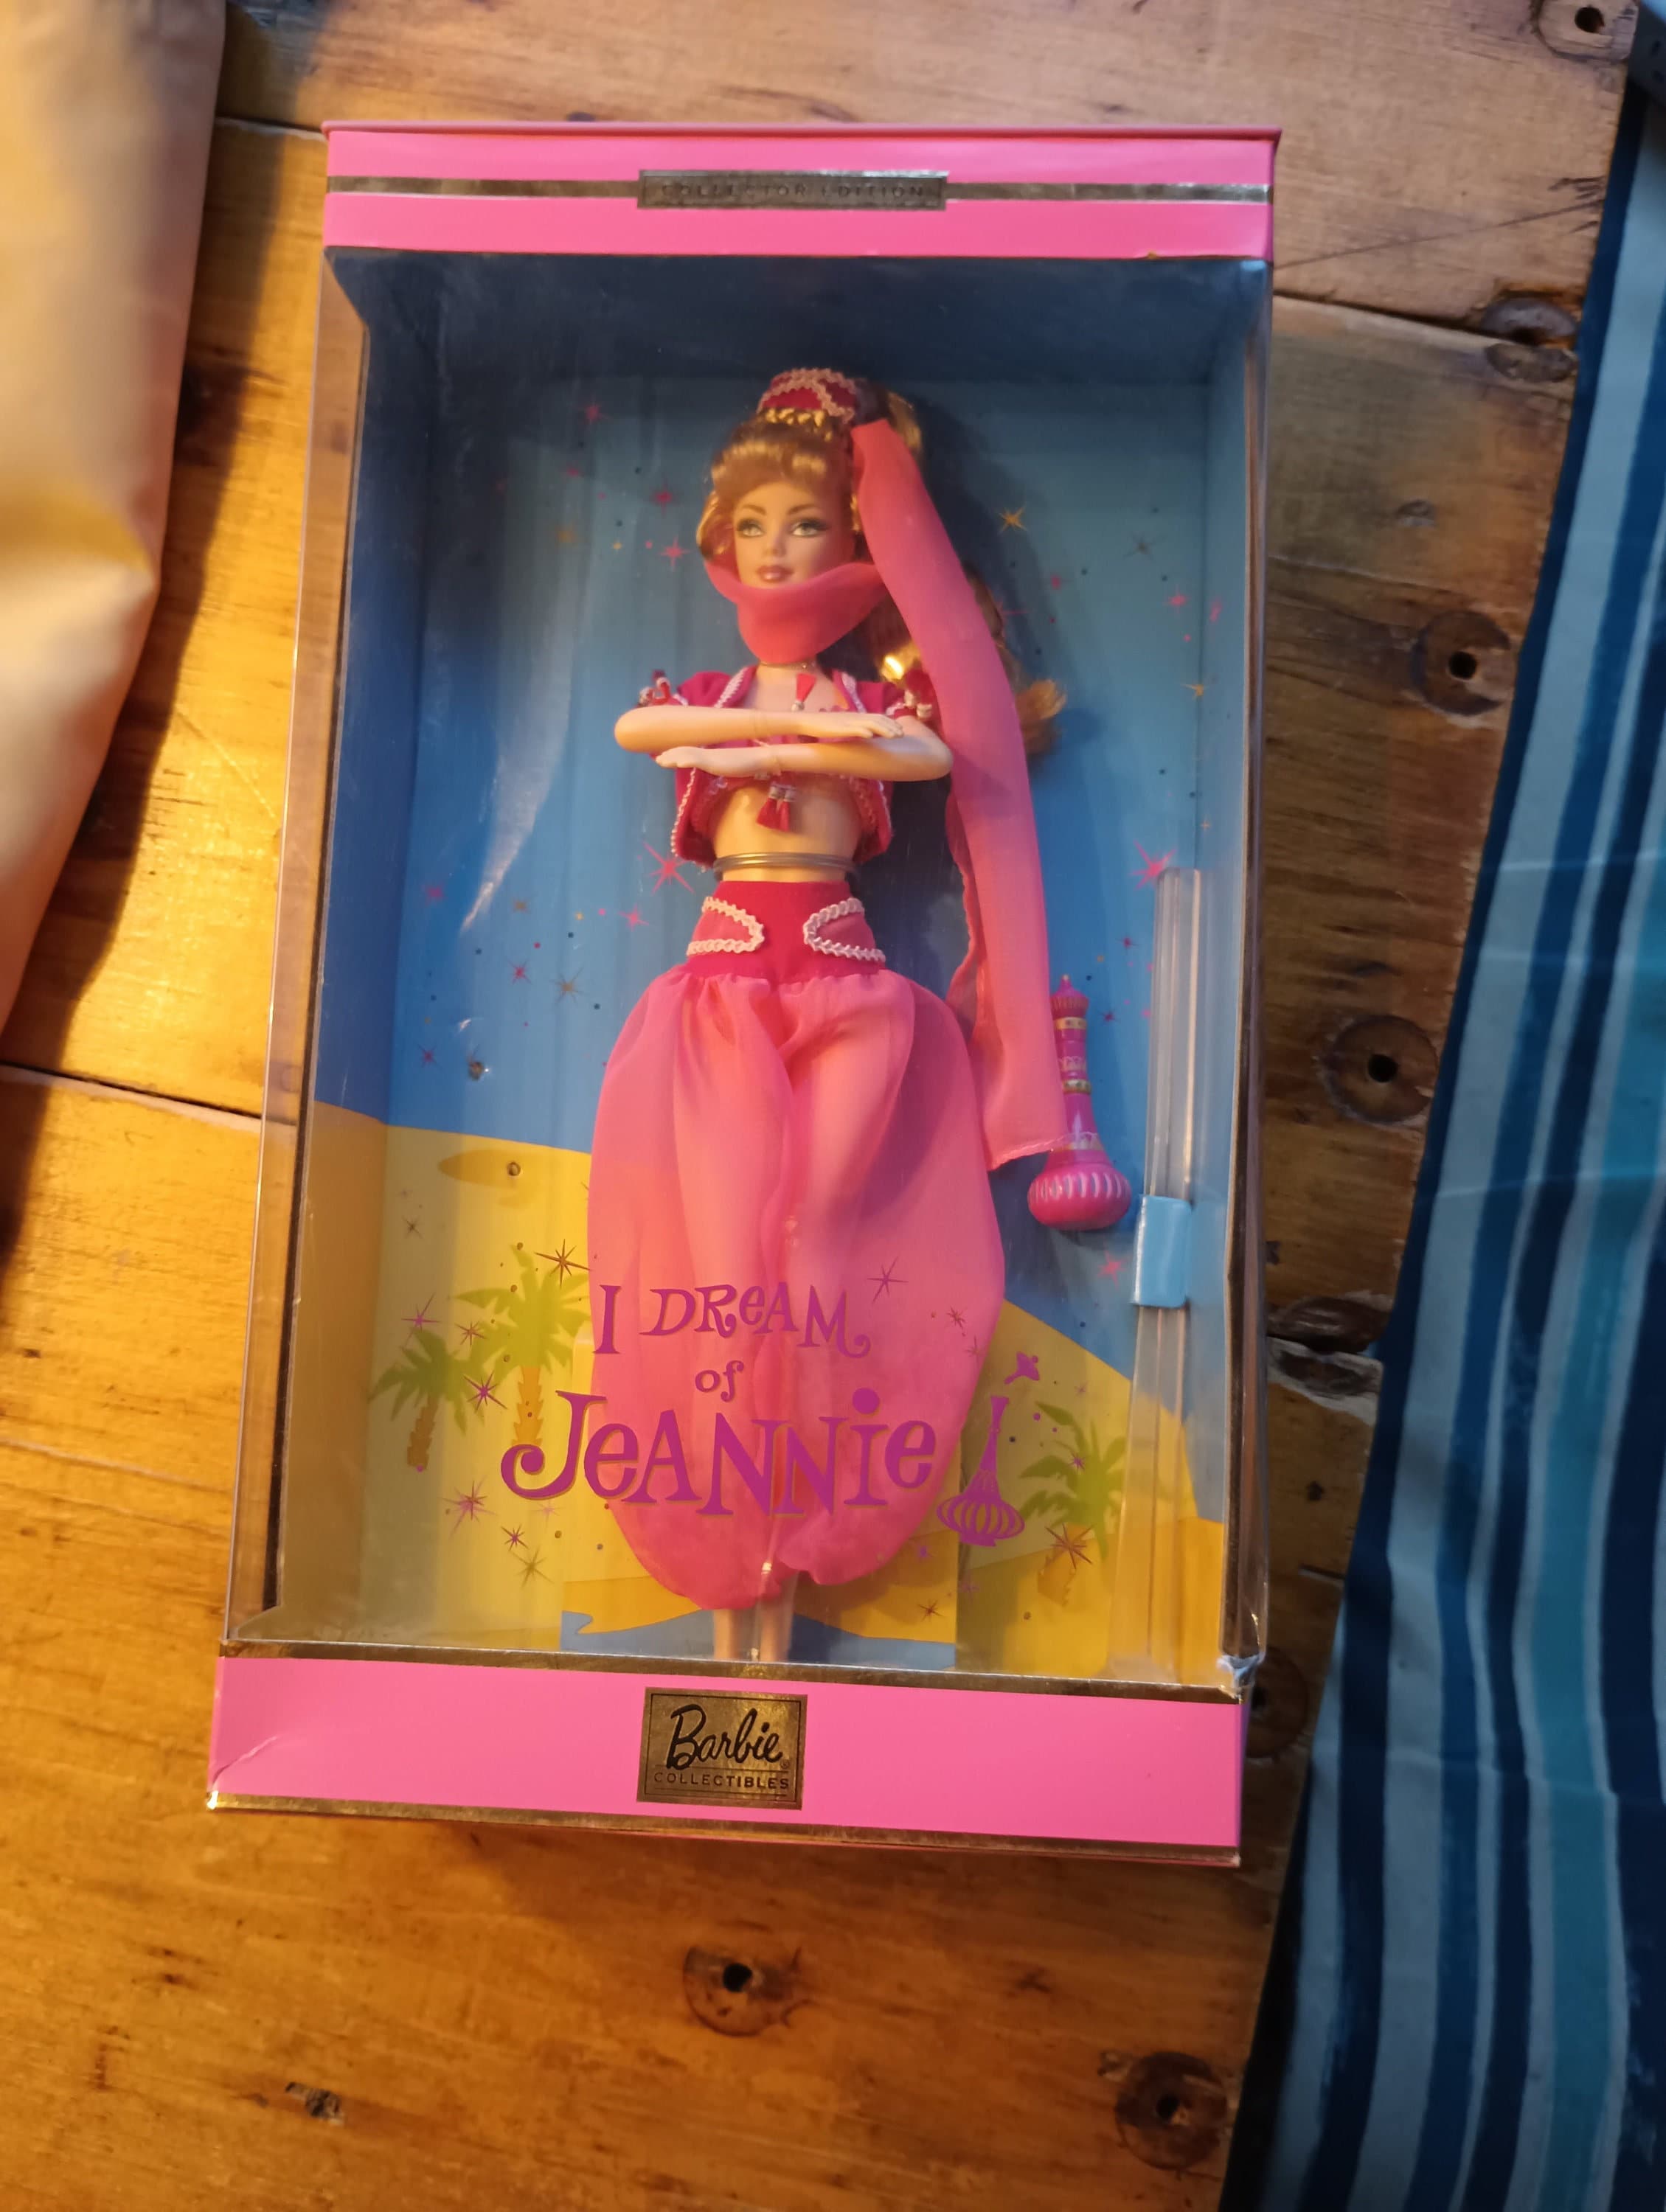 Barbie - a Princesa e a Pop Star + Marca Página em Promoção na Americanas